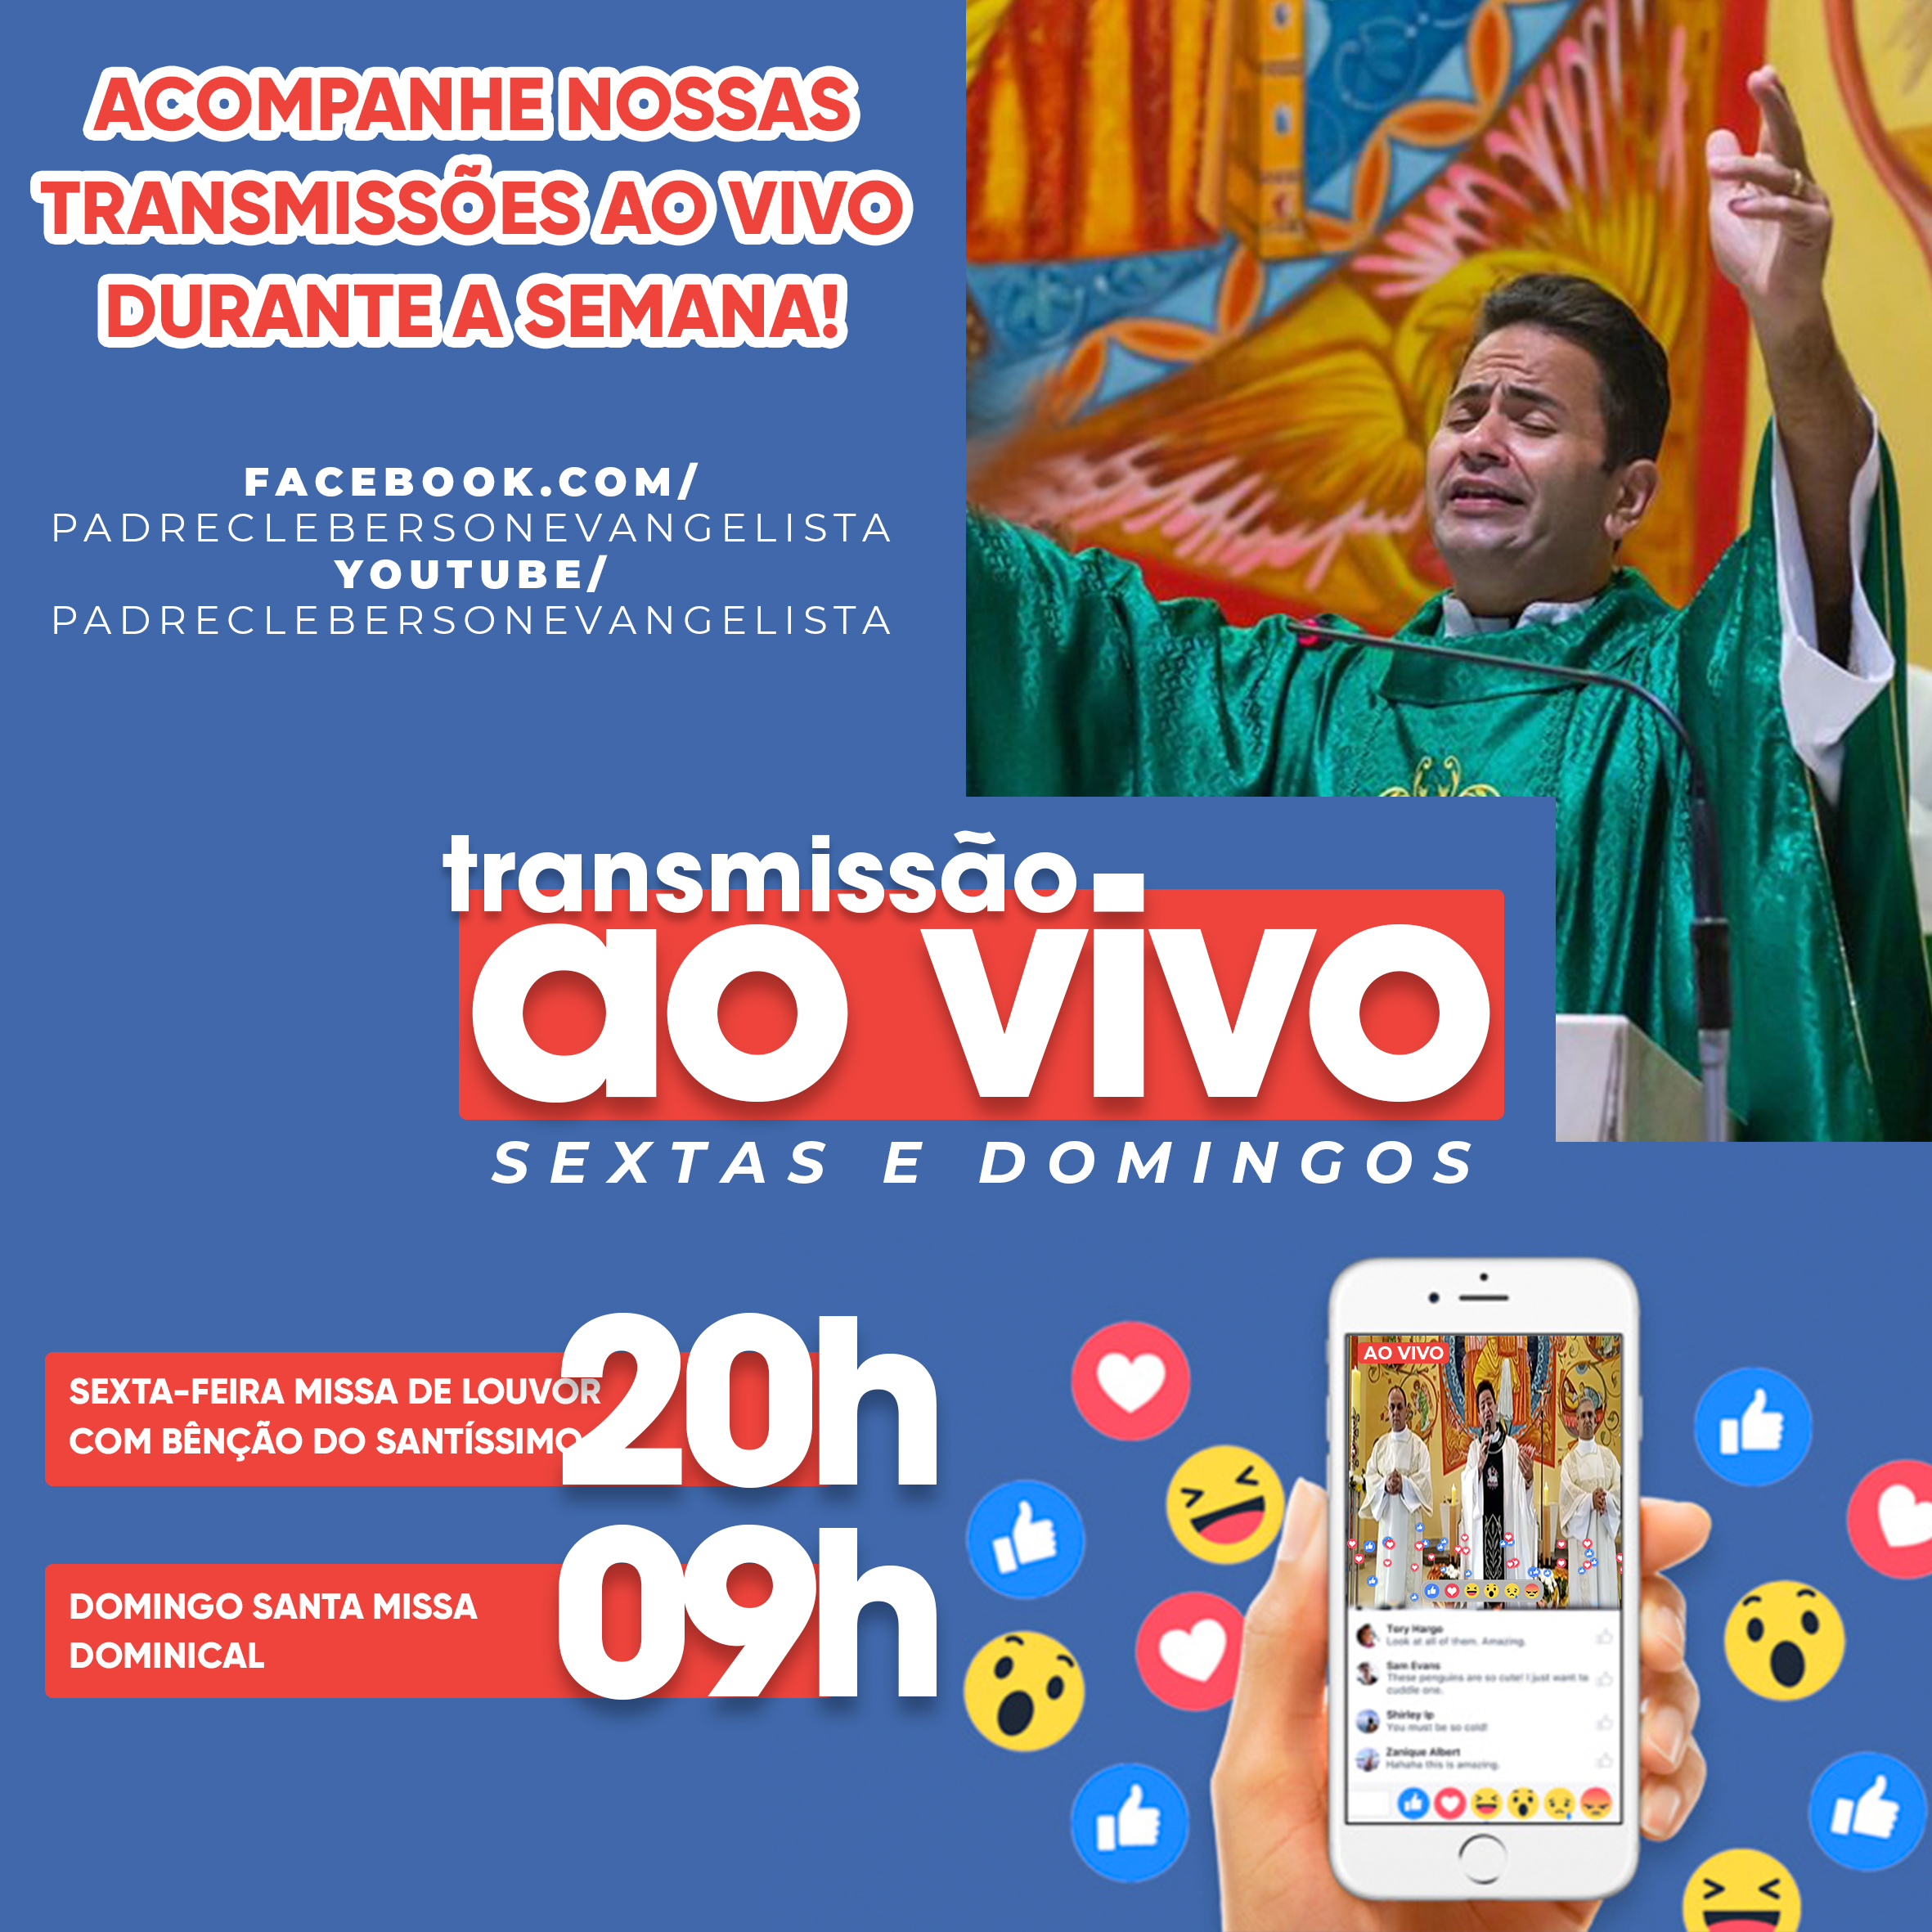 Transmissões das Missas na paróquia São Rafael Arcanjo